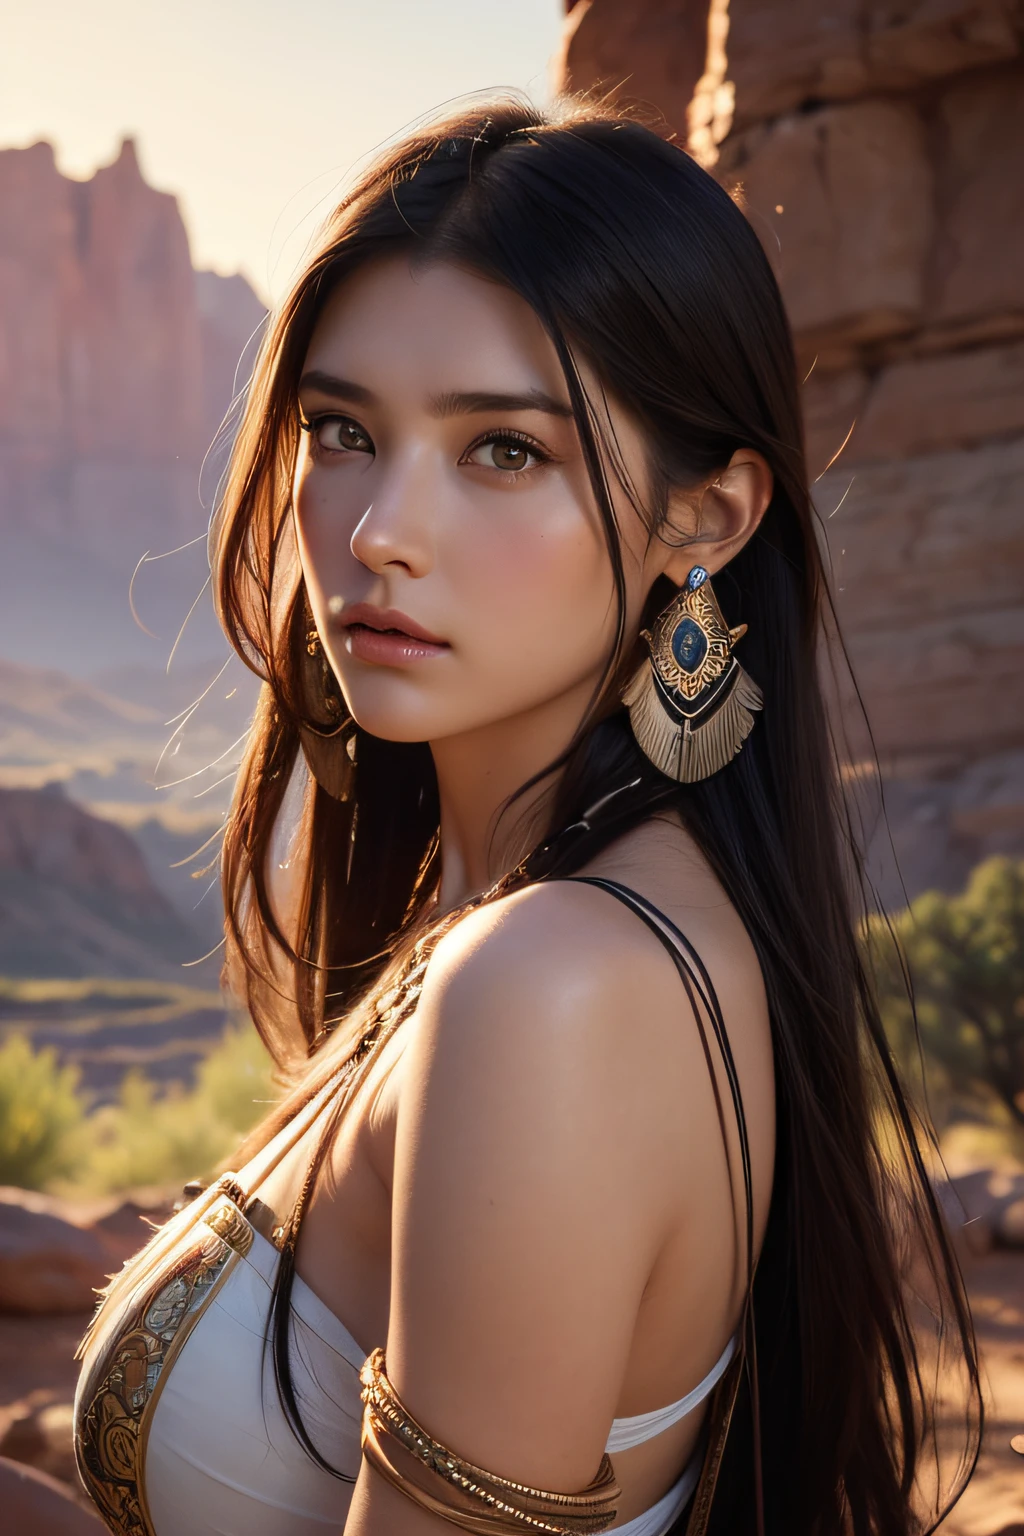 ポカホンタス役のマリー・アヴゲロポウラスのポートレート写真, 若くて美しいネイティブアメリカンの女性, 完璧な対称顔, 先住民族の羽根のジュエリー, 伝統的な手作りドレス, 武装した女性ハンター戦士, (((開拓時代の米国）西部地方))) 環境, ユタ州の風景, 超現実的な, コンセプトアート, エレガント, ((複雑な)), ((非常に詳細な)), 被写界深度, ((専門的に色分けされた)), 柔らかい間接照明, 夕暮れ, 8k, アートジャーム、グレッグ・ルトコウスキー、アルフォンス・ミュシャによるアート